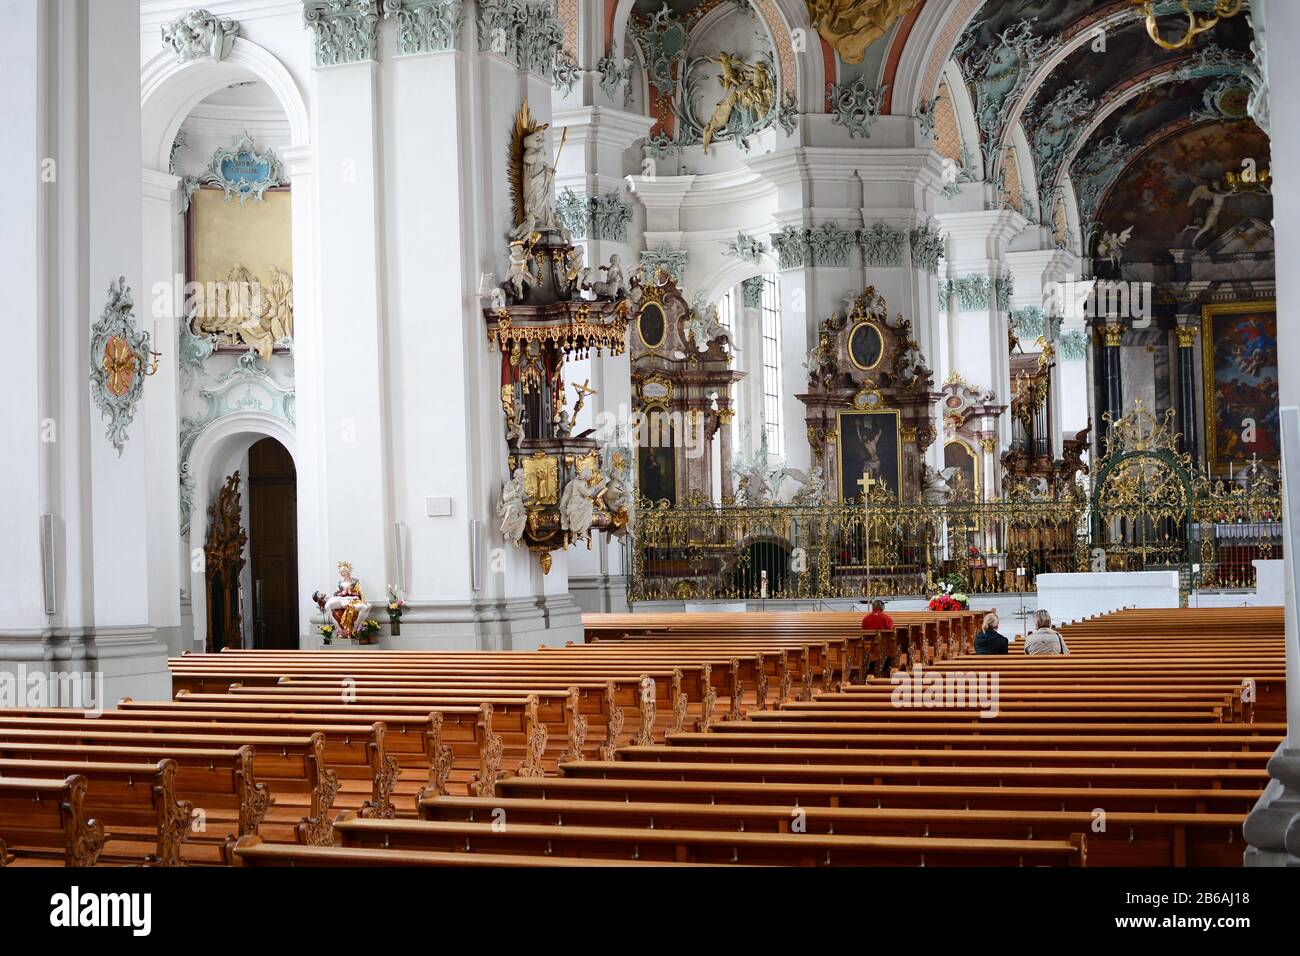 ST. Gallen, SCHWEIZ - 10. JULI 2014: Die Stift Sankt Gall. Die seit 719 bestehende Römisch-Katholische Kathedrale gehört zur UNESCO-Welt Herita Stockfoto